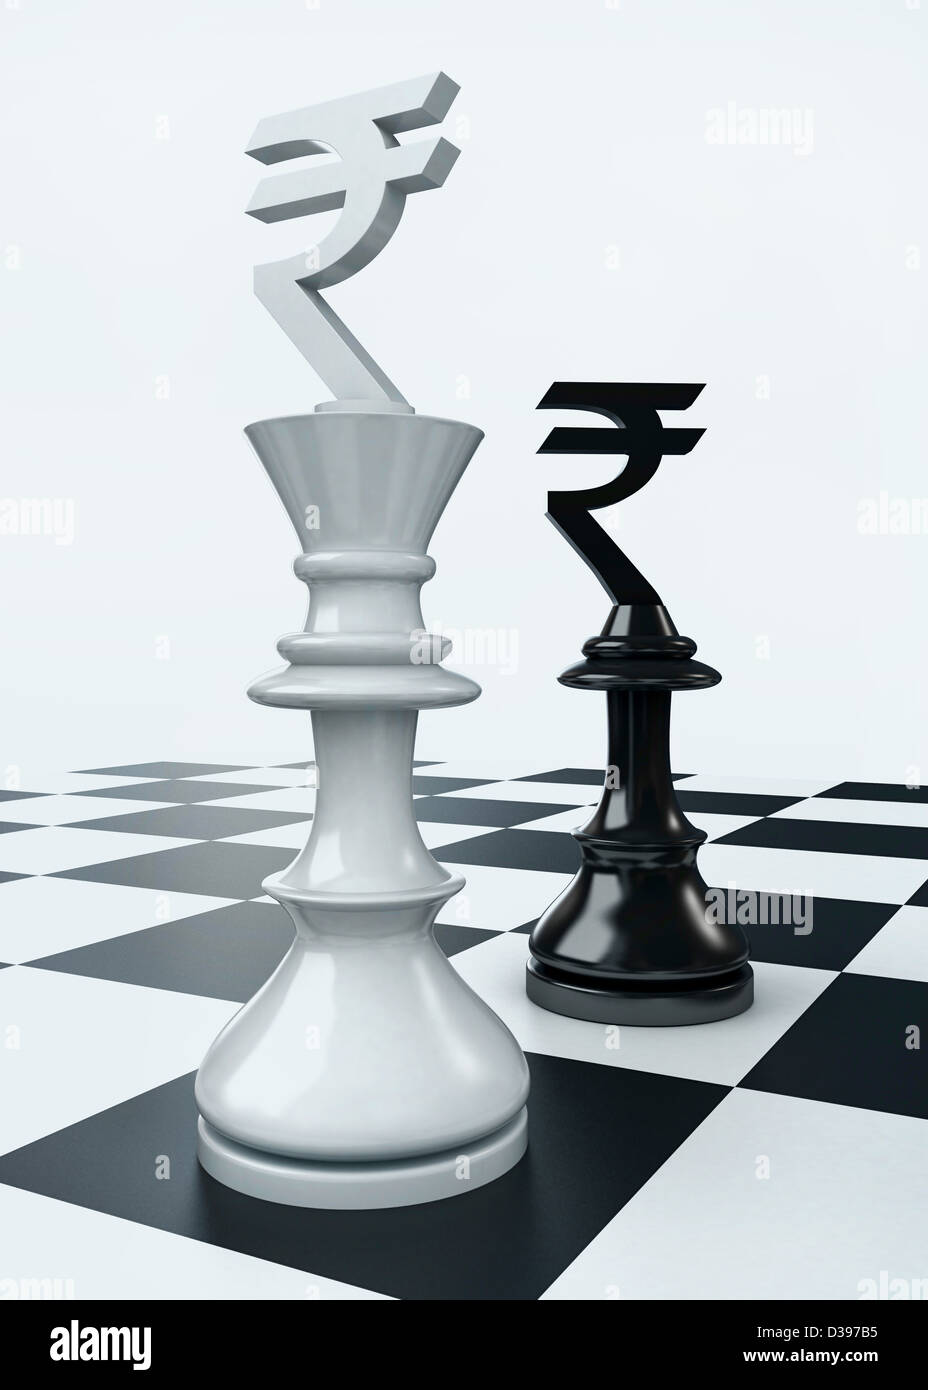 Inquadratura concettuale del simbolo di valuta su pezzi di scacchi che rappresentano il partenariato Foto Stock